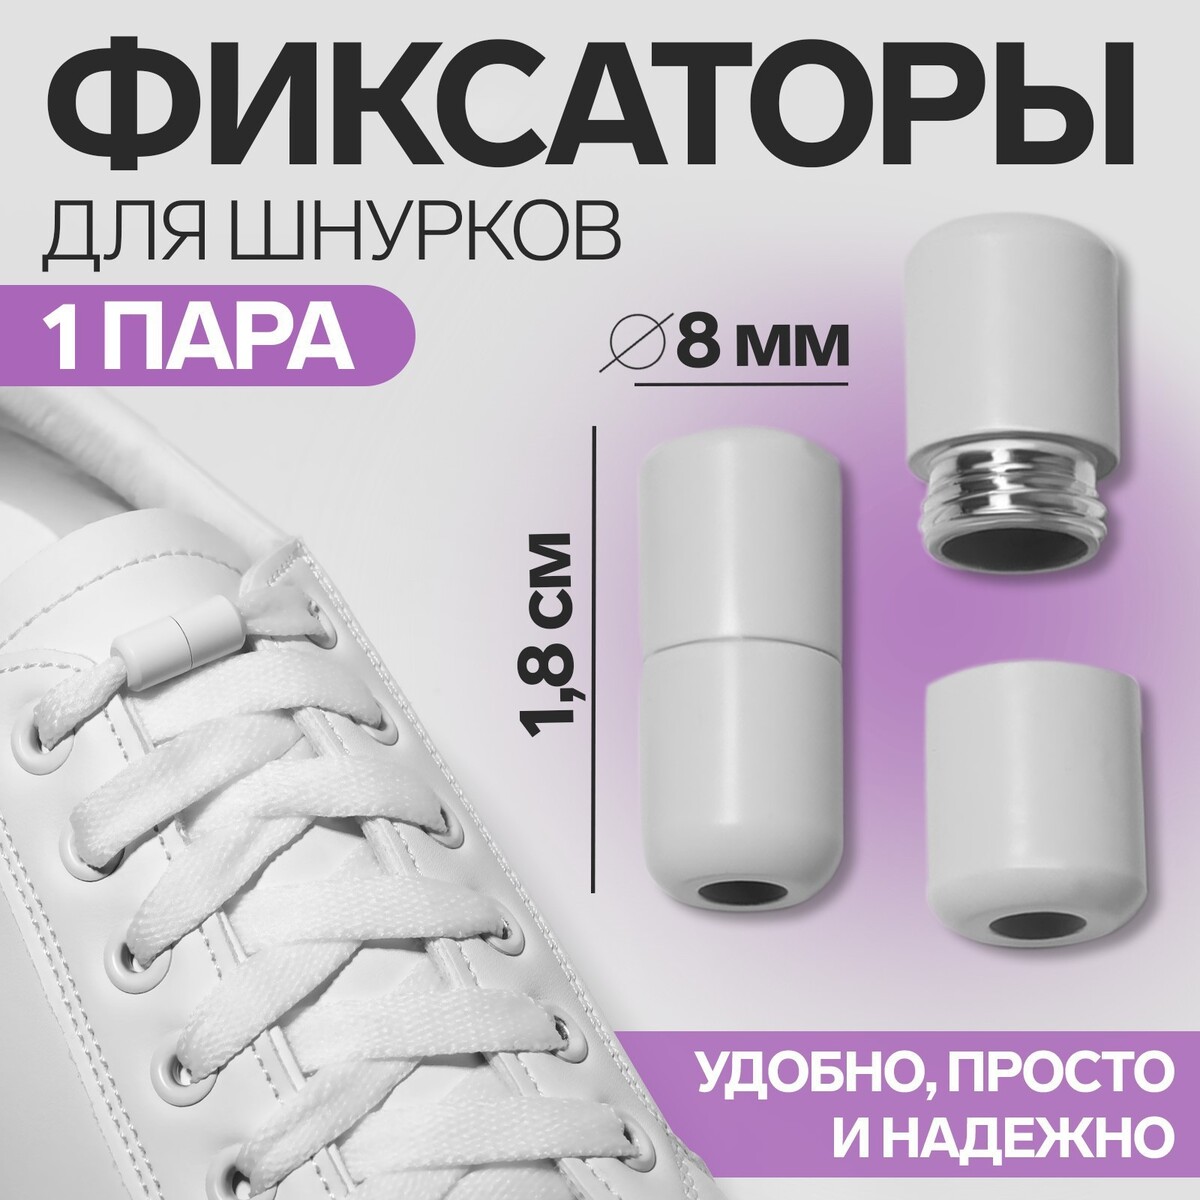 Фиксатор для шнурков, пара, d = 8 мм, 1,8 см, цвет белый фиксатор для шнурков пара d 8 мм 1 8 см